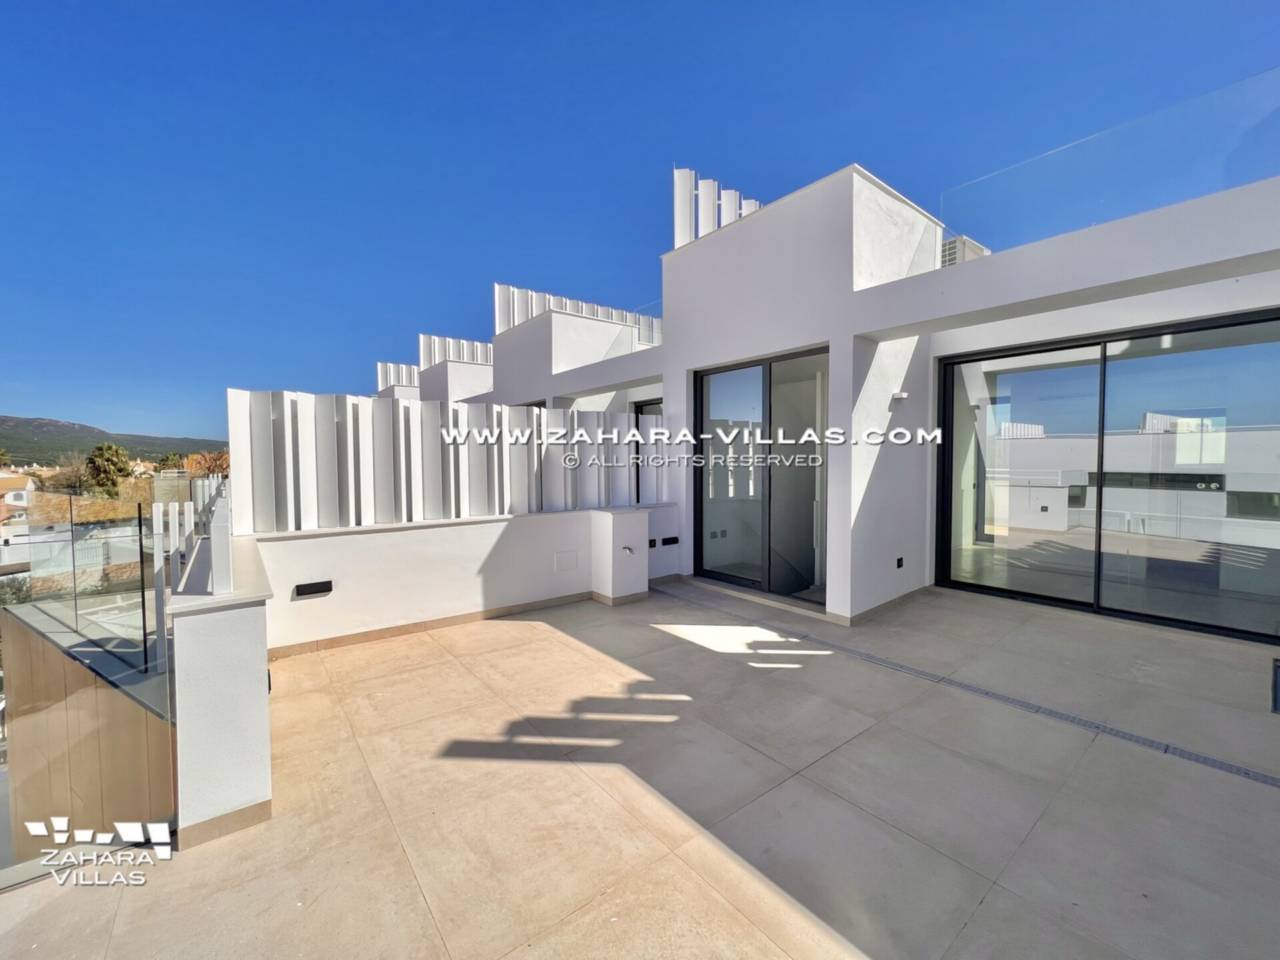 Imagen 52 de Promoción obra nueva terminada "EL OASIS DE ZAHARA" viviendas adosadas junto al mar